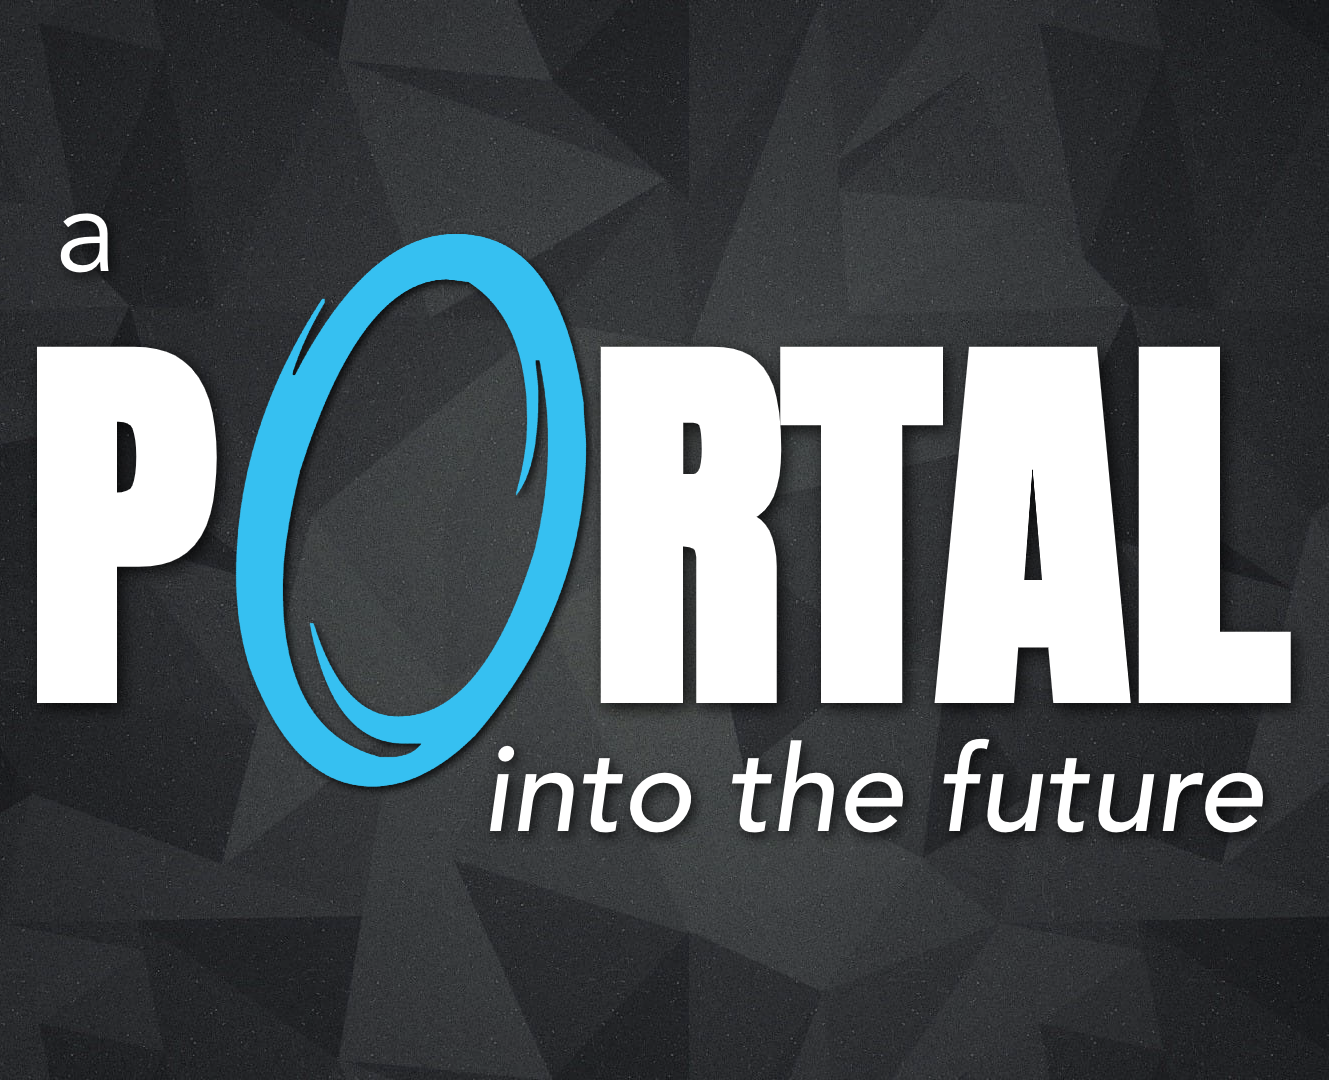 Ryan Post - "A Portal Into the Future"